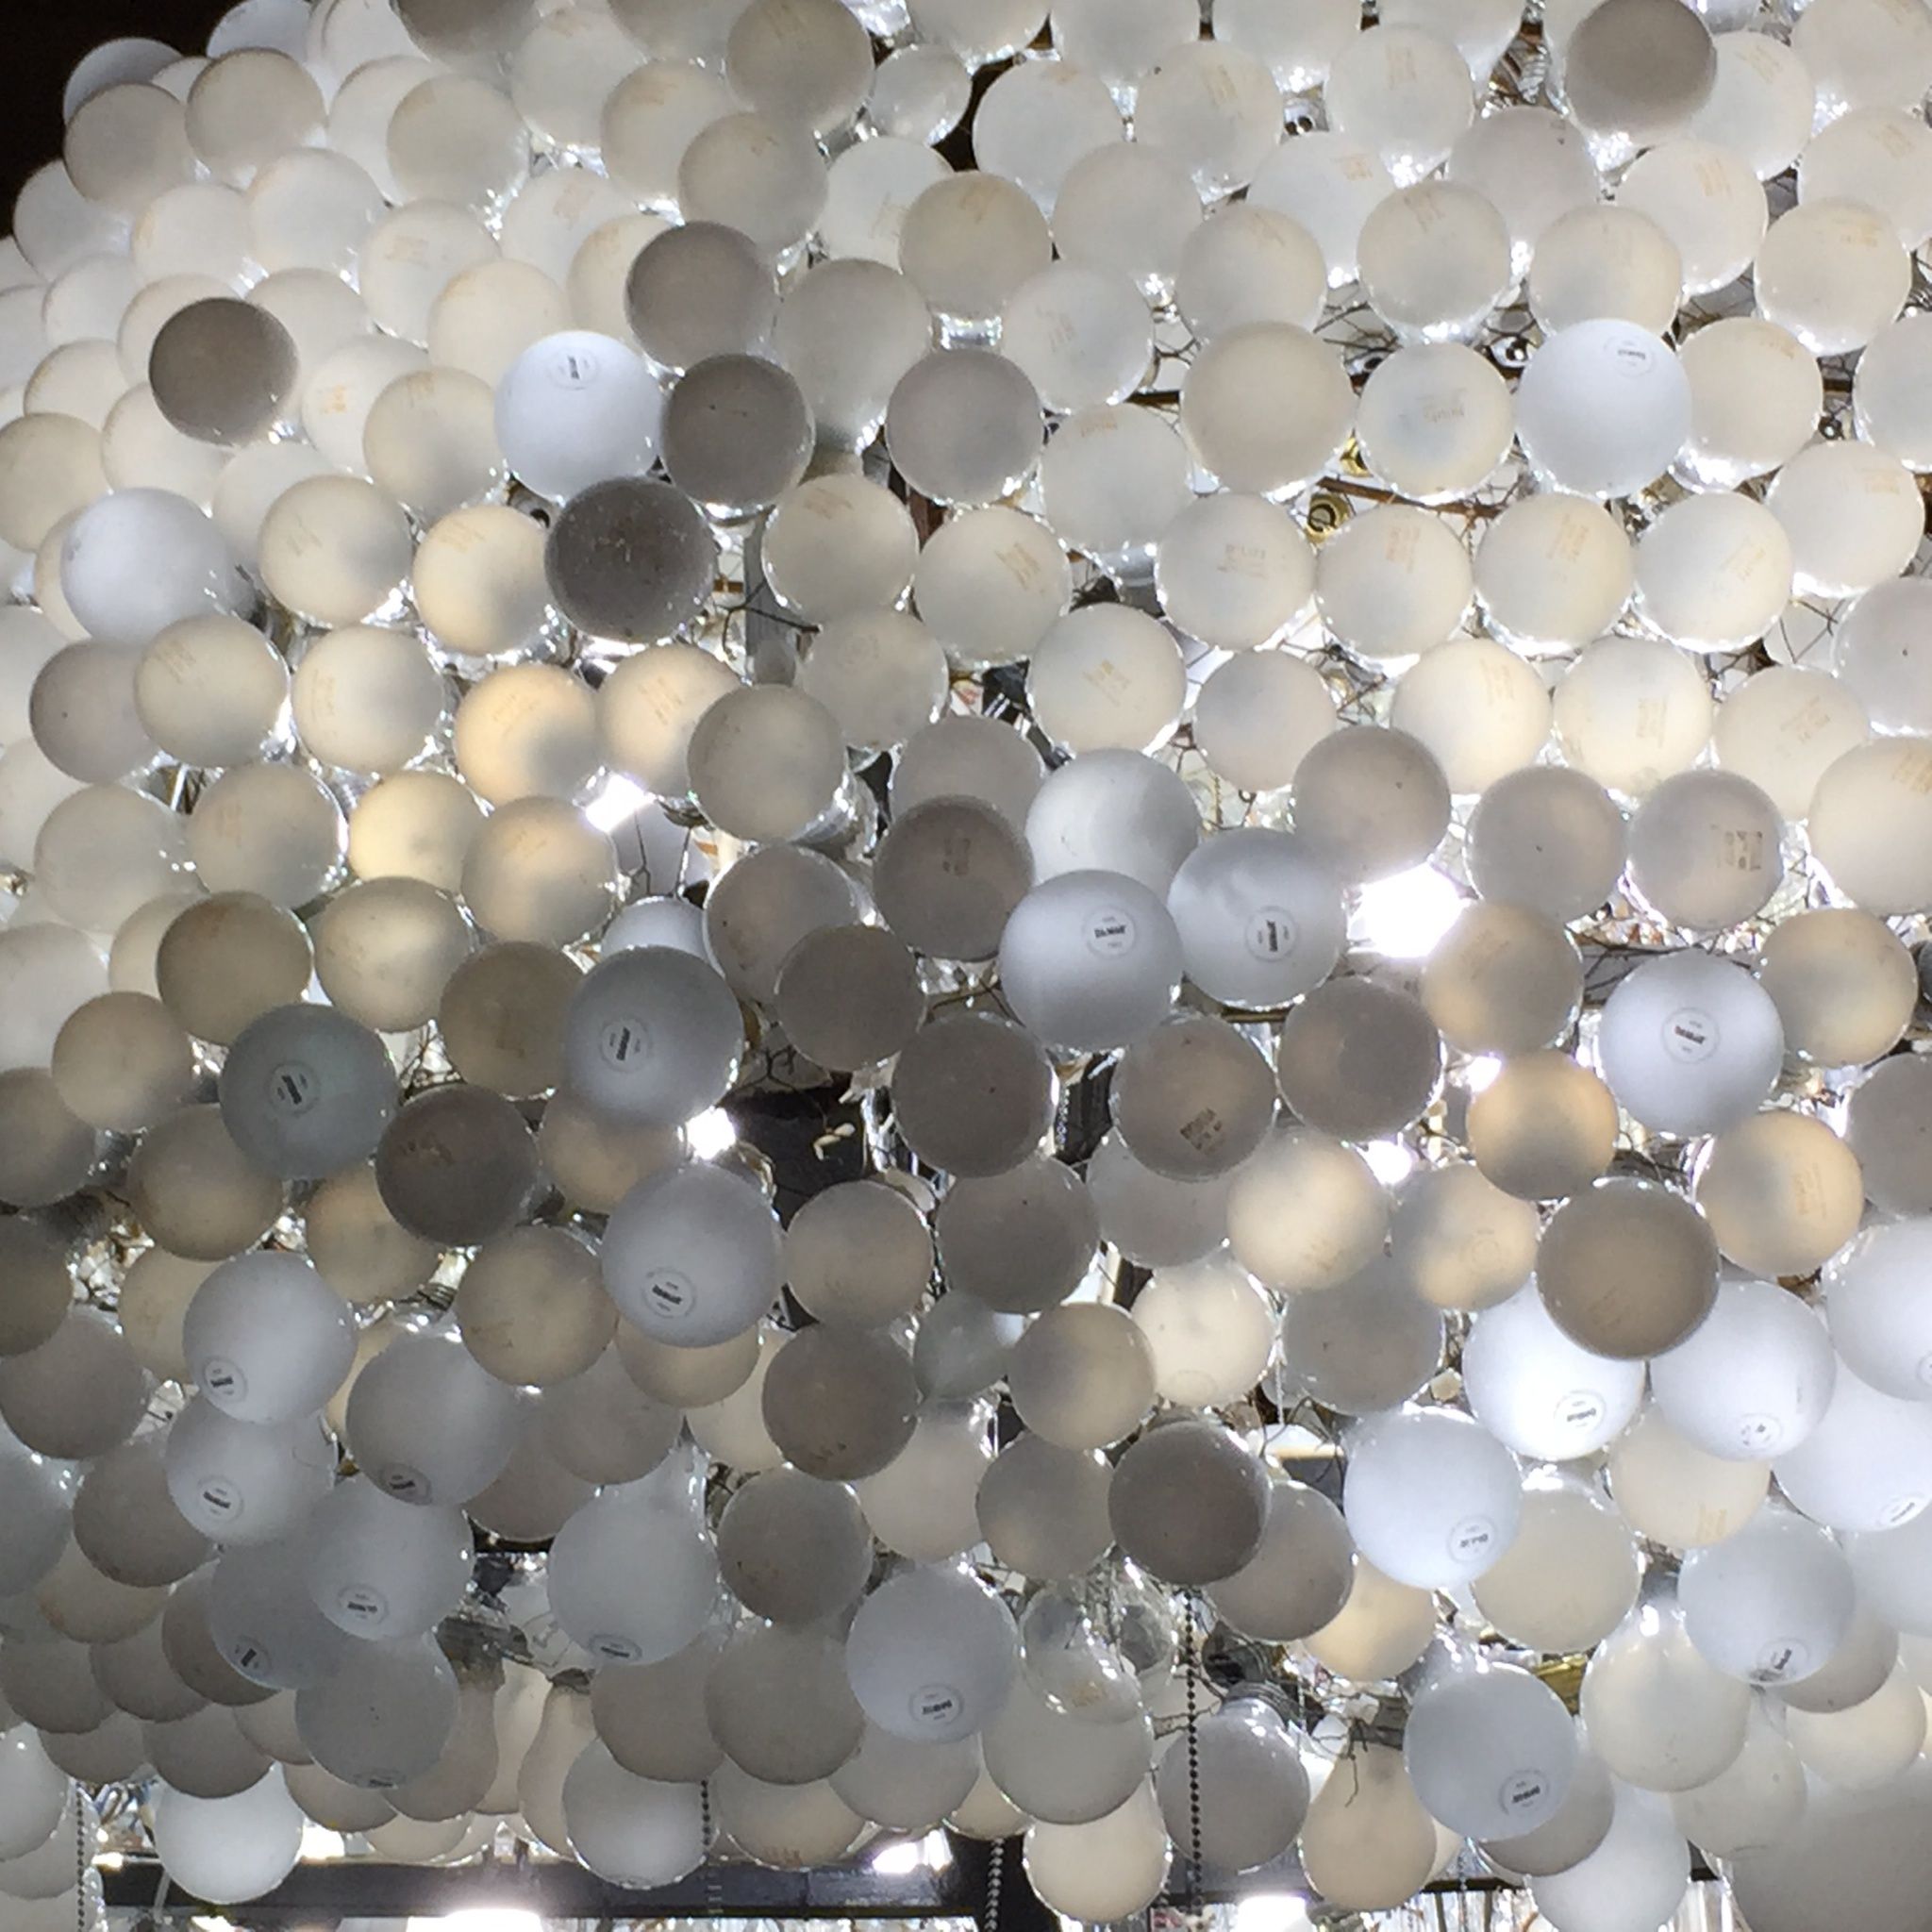 Got Light Finds Inspiration at Ghent Light Festival 2015